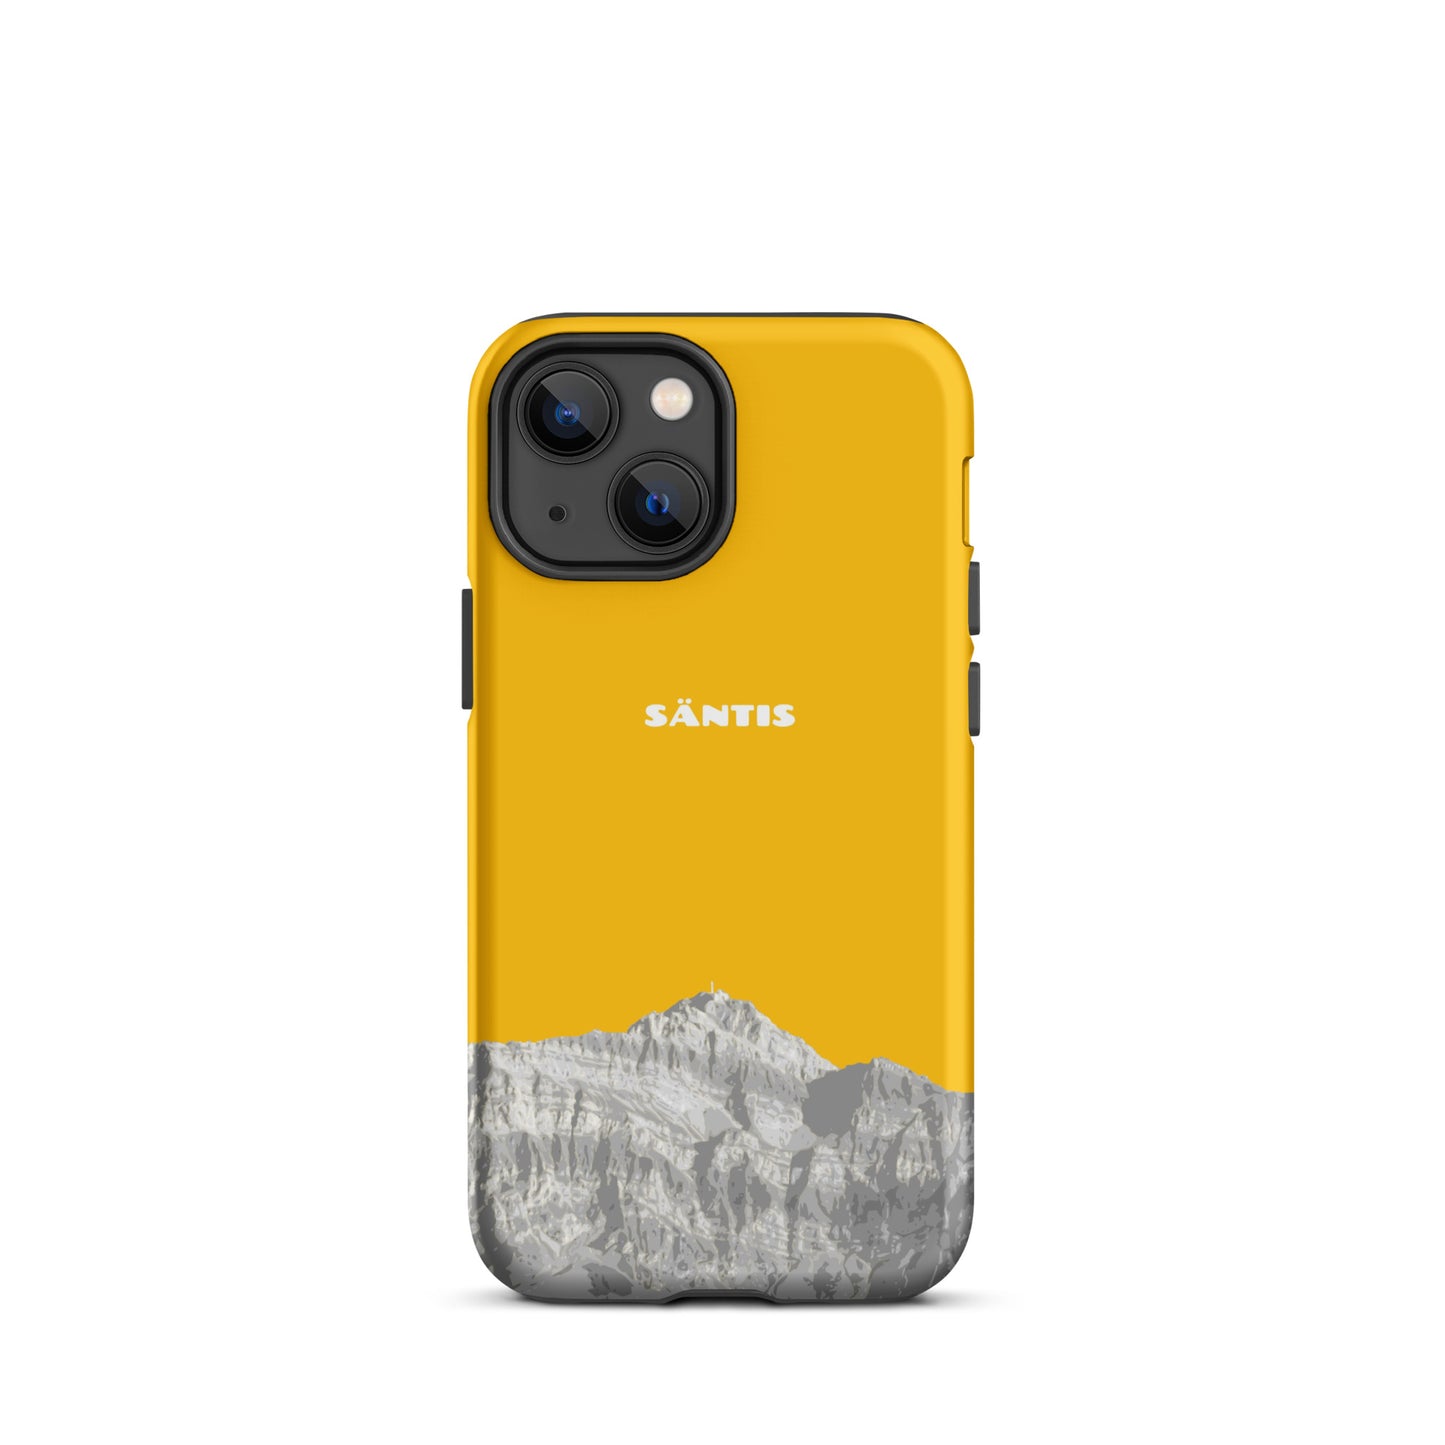 Hülle für das iPhone 13 mini von Apple in der Farbe Goldgelb, dass den Säntis im Alpstein zeigt.